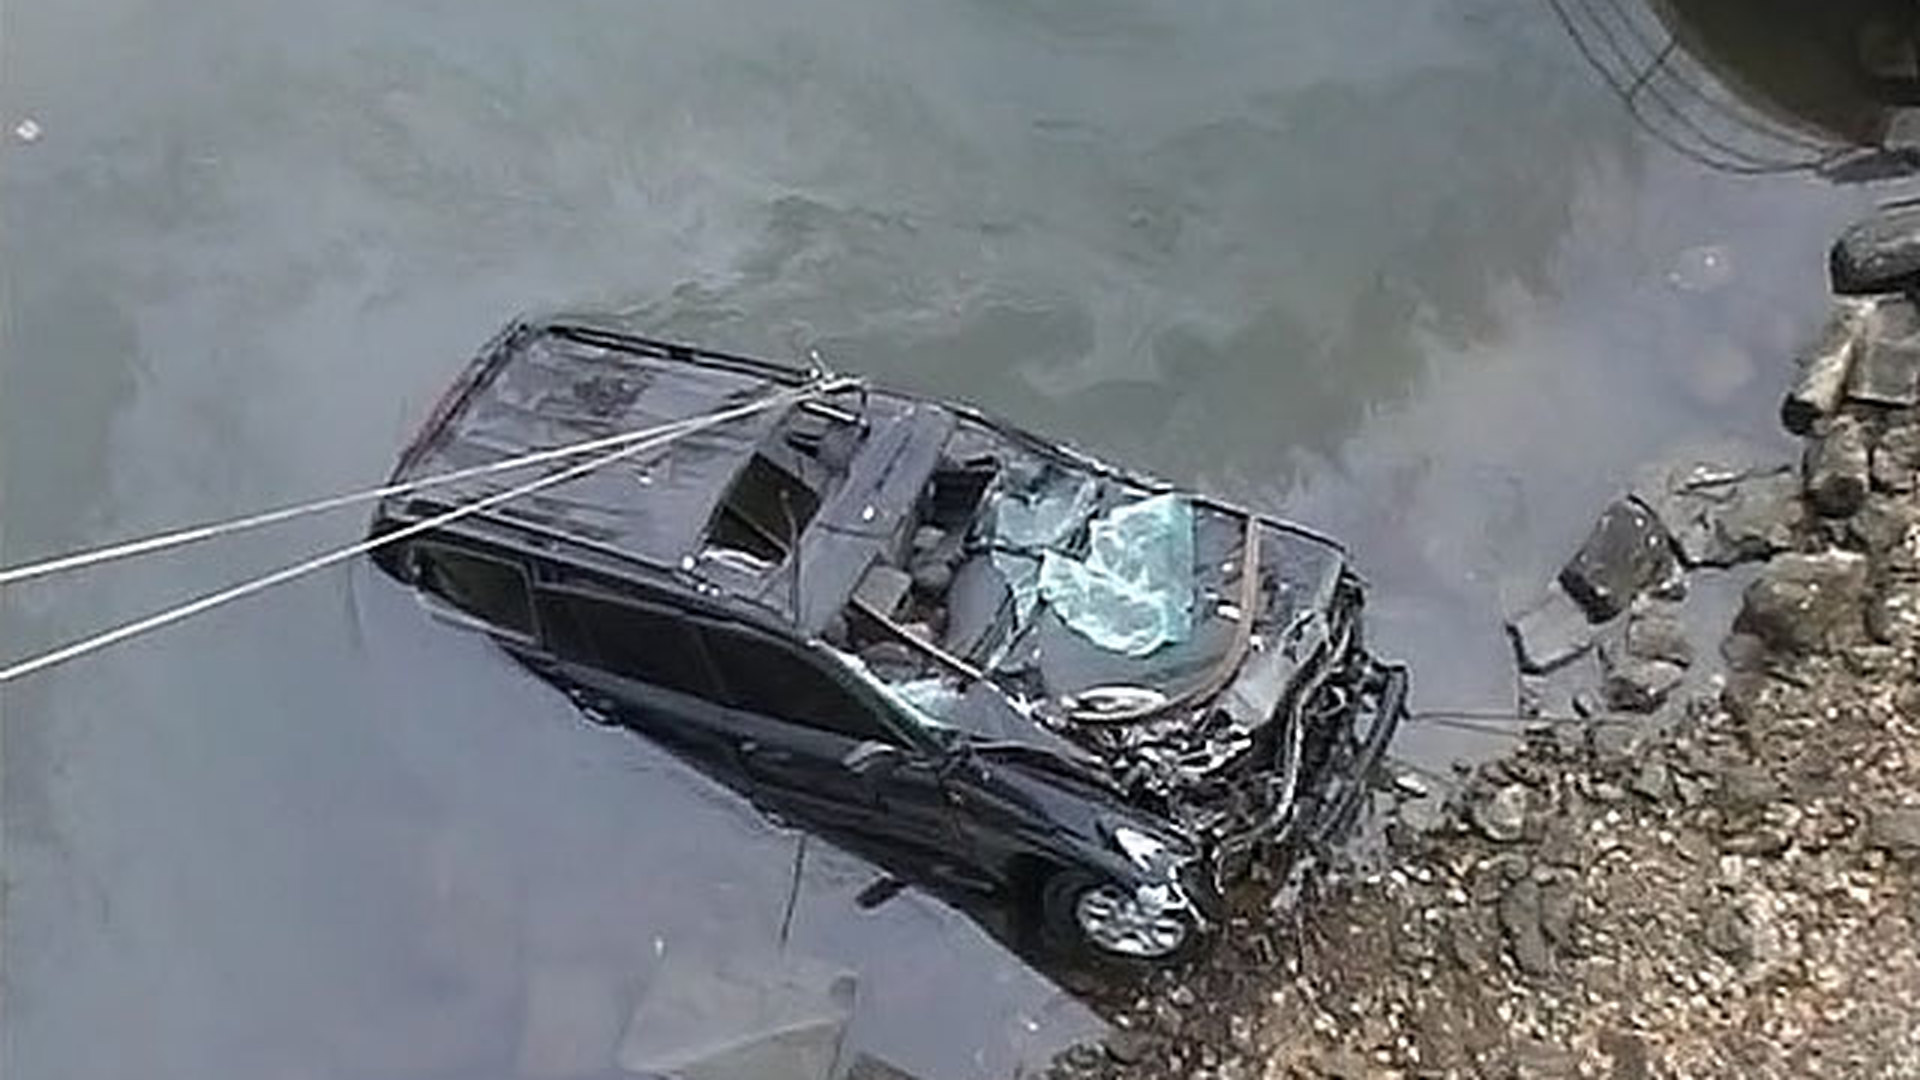 Машины падают в воду. Машина упала в воду. Машина упала в речку. Автомобиль попал в воду.